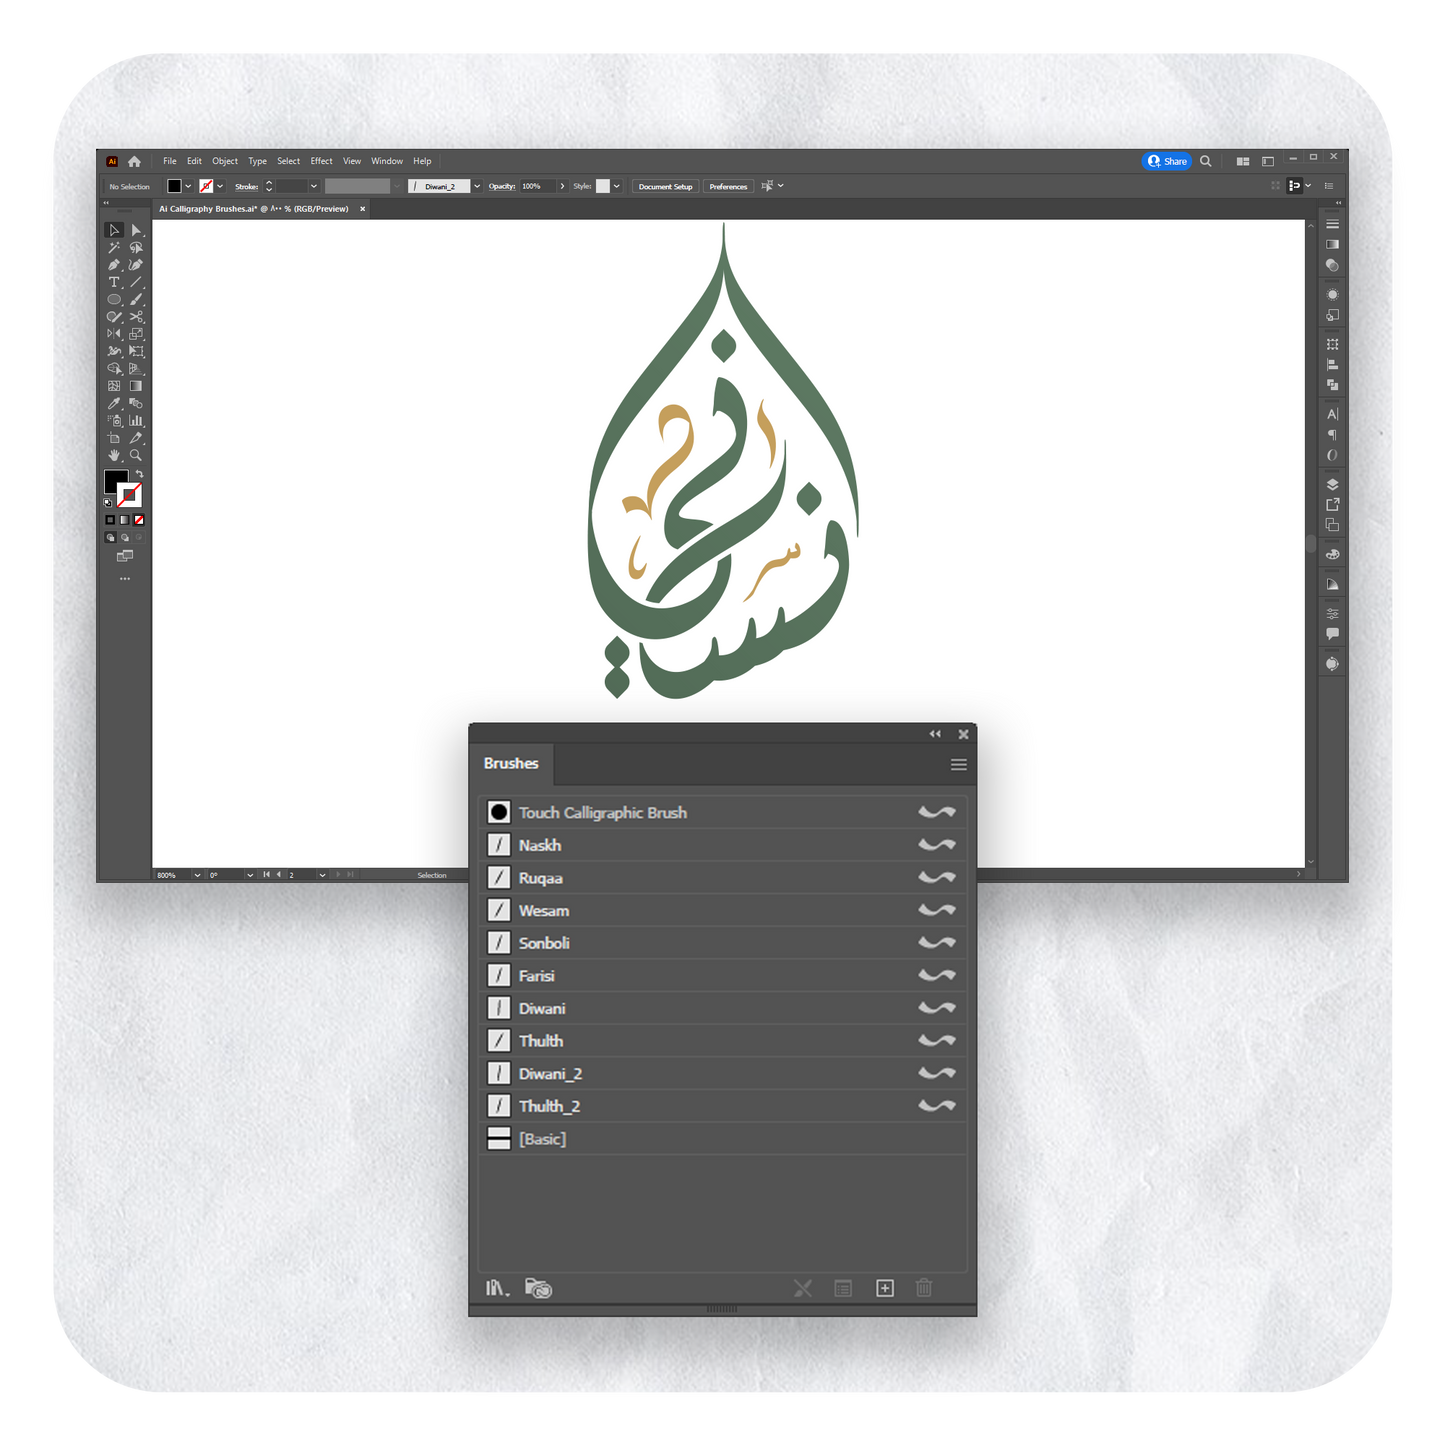 فرش وتشكيلات الخط عربي تعمل على برنامج أدوبي الستريتور عبر أجهزة الكمبيوتر مقدمة من متجر آرت سلة